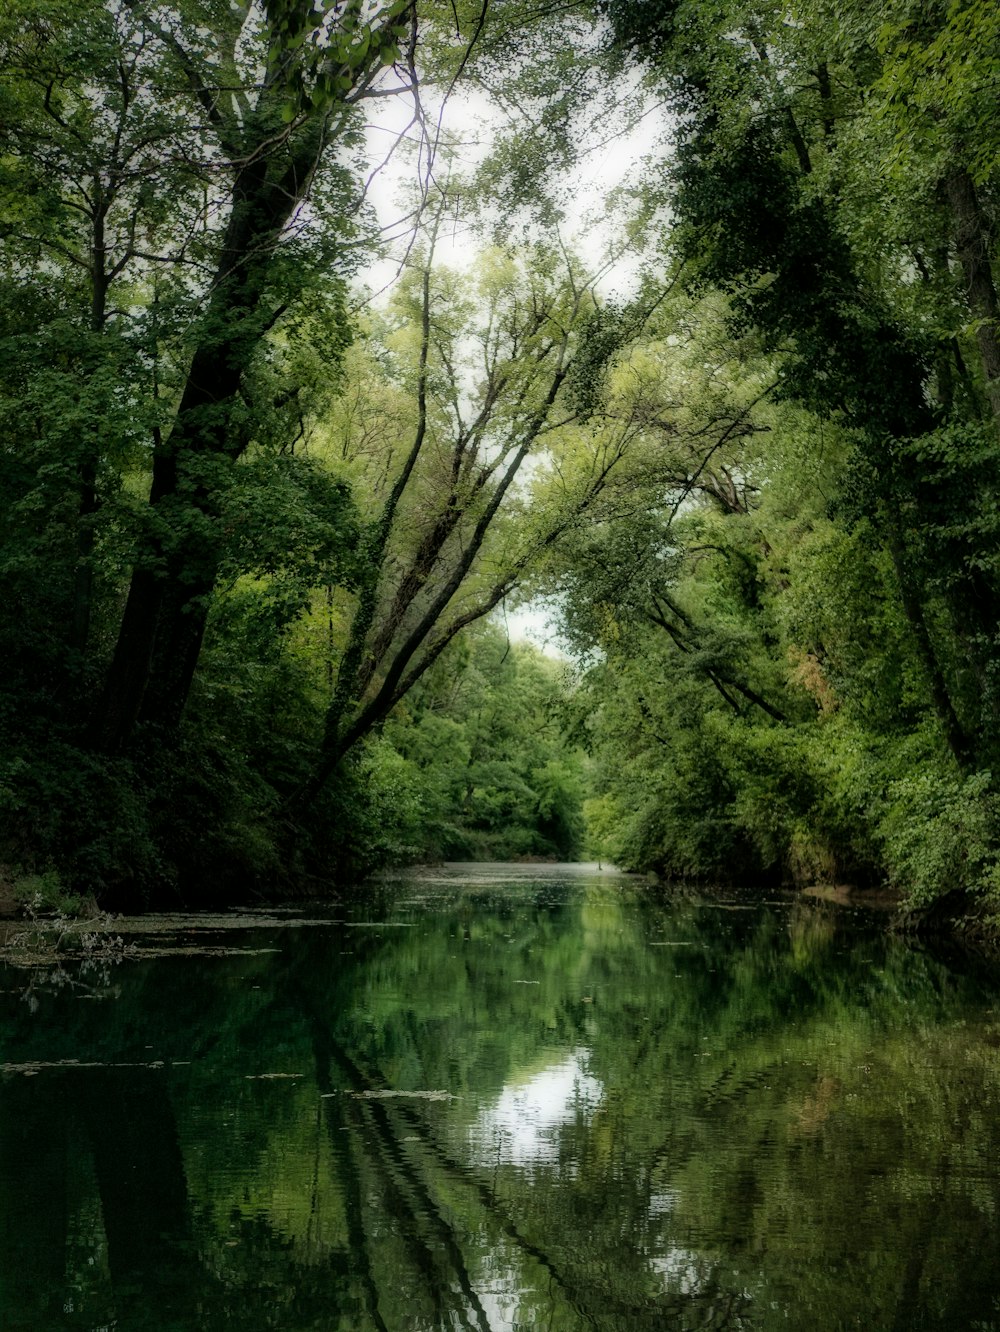 uno specchio d'acqua circondato da rigogliosi alberi verdi